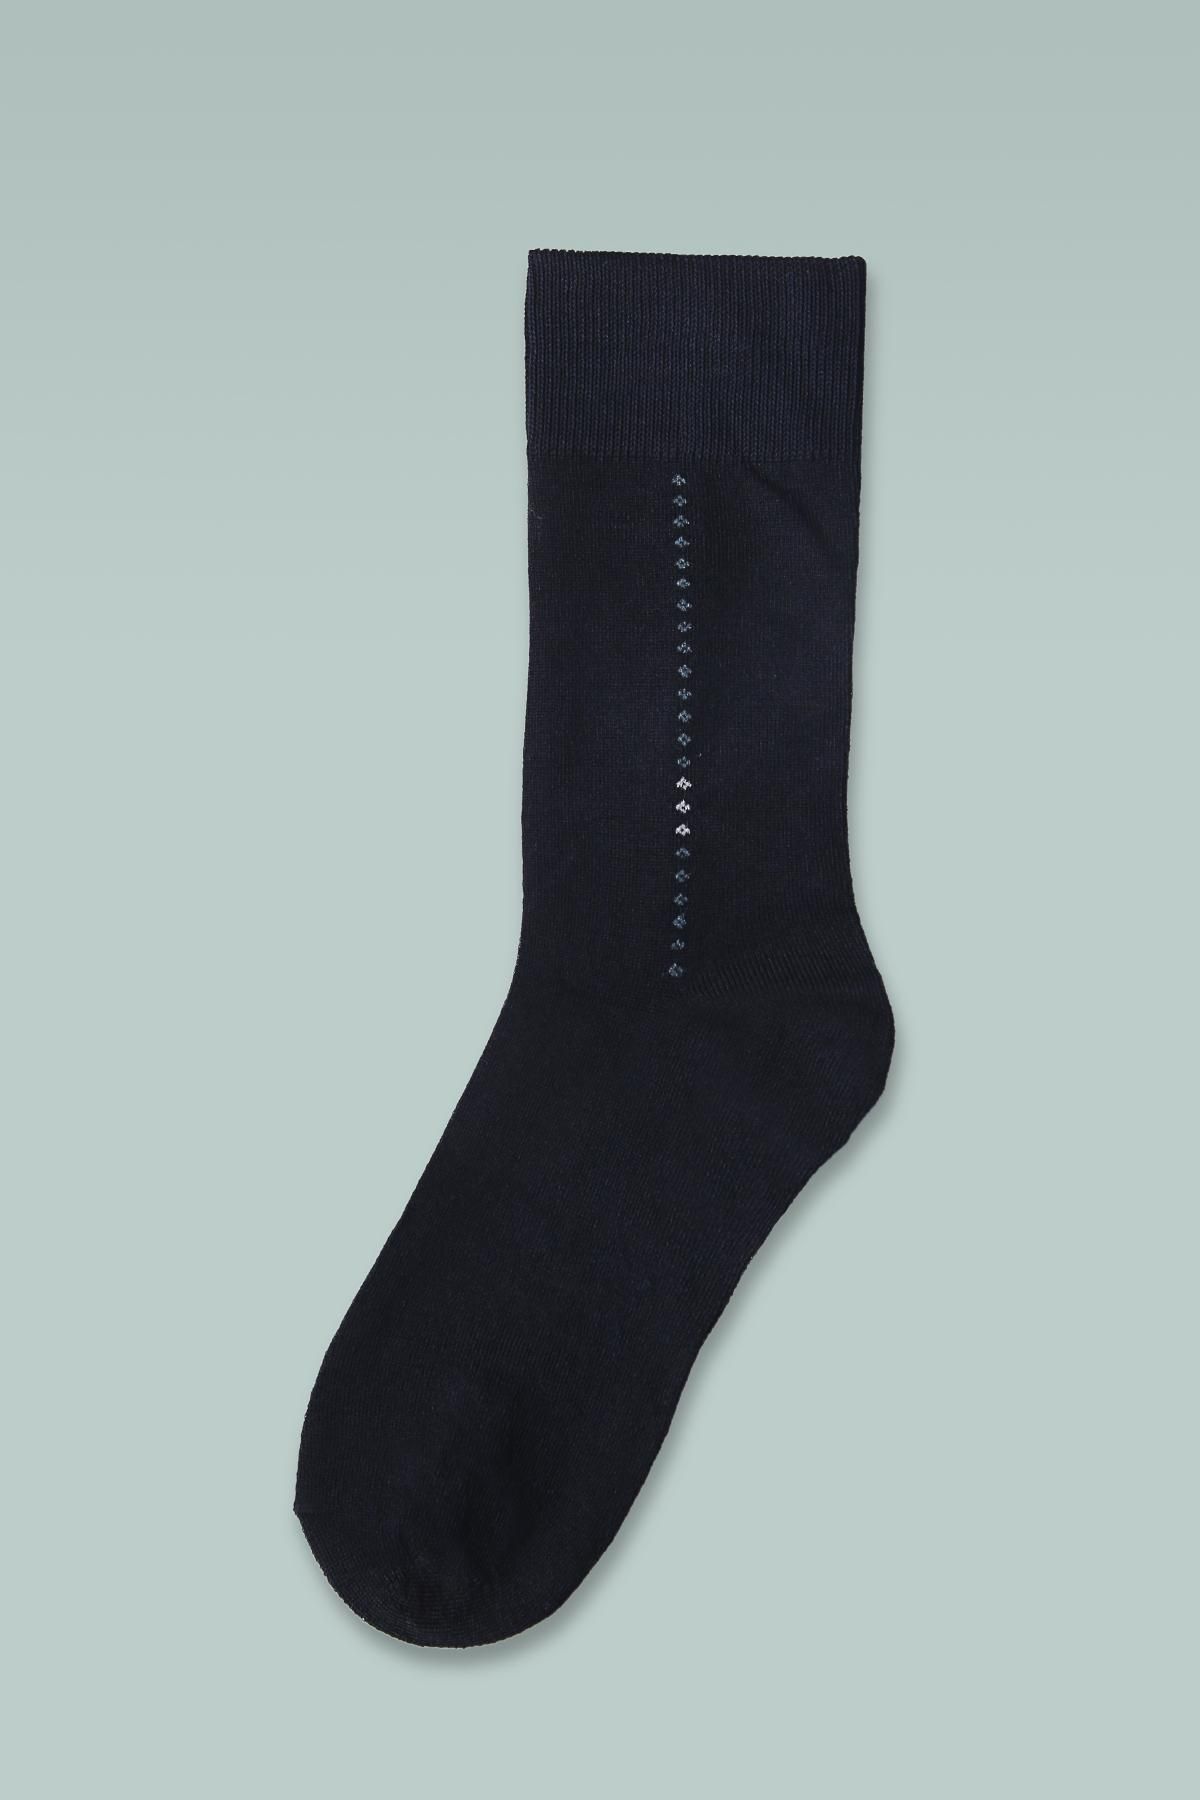 Long Black Socks